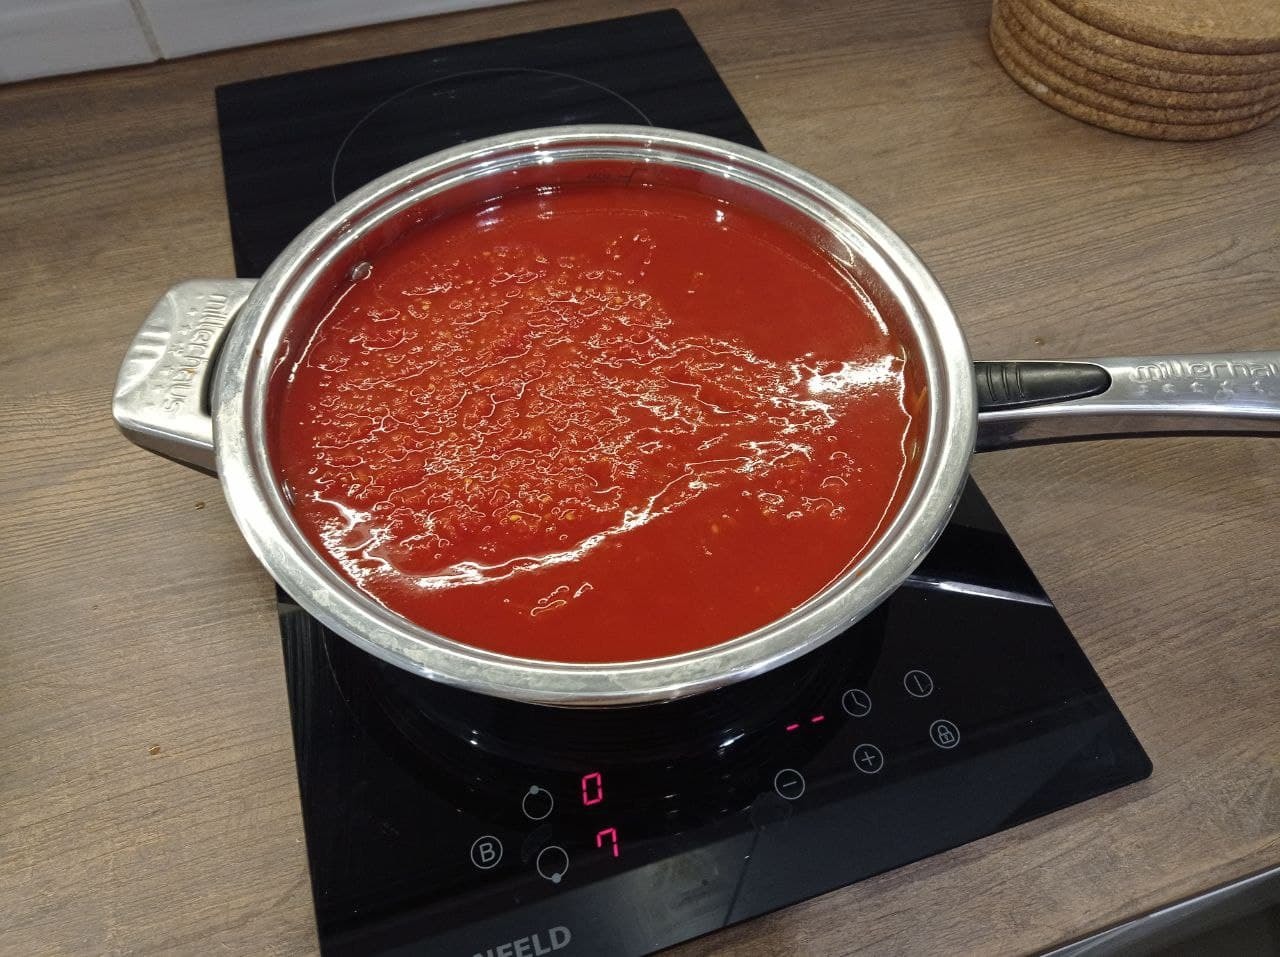 томатный соус для пиццы рецепт энди шеф фото 99